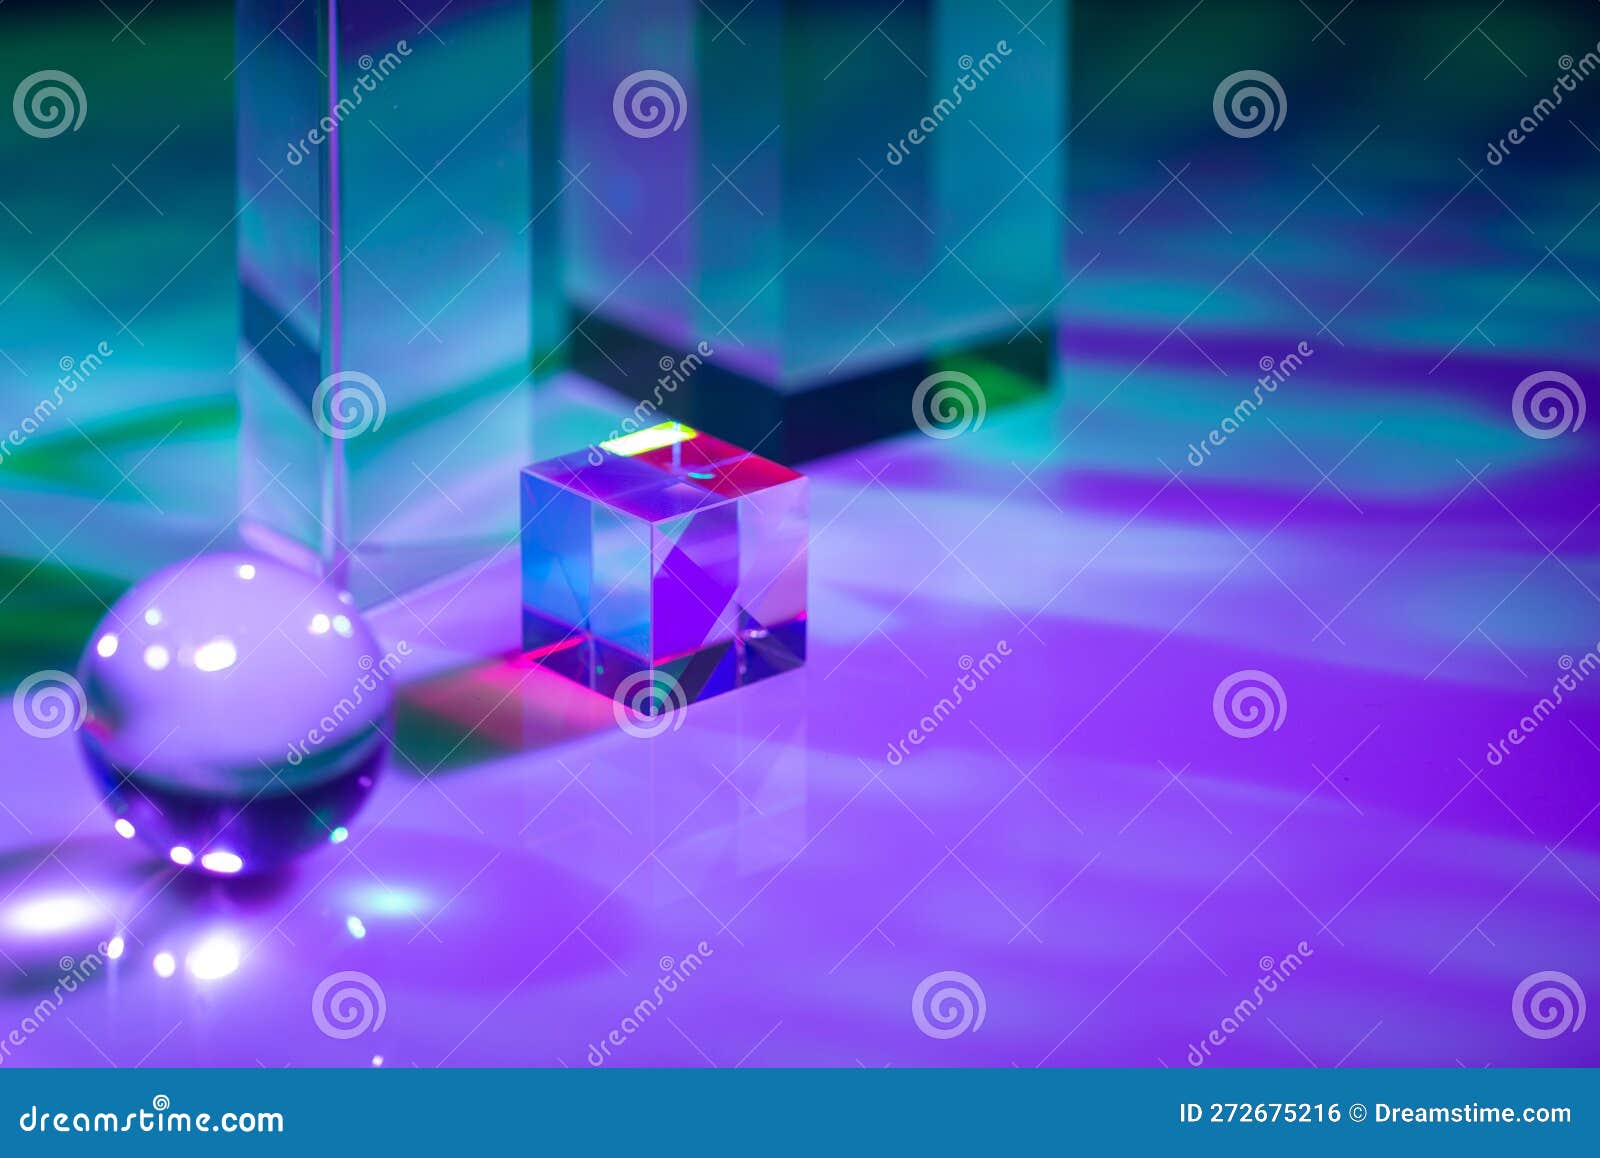 https://thumbs.dreamstime.com/z/prisme-de-cristal-verre-effet-lumi%C3%A8re-multicolore-en-optique-holographique-272675216.jpg